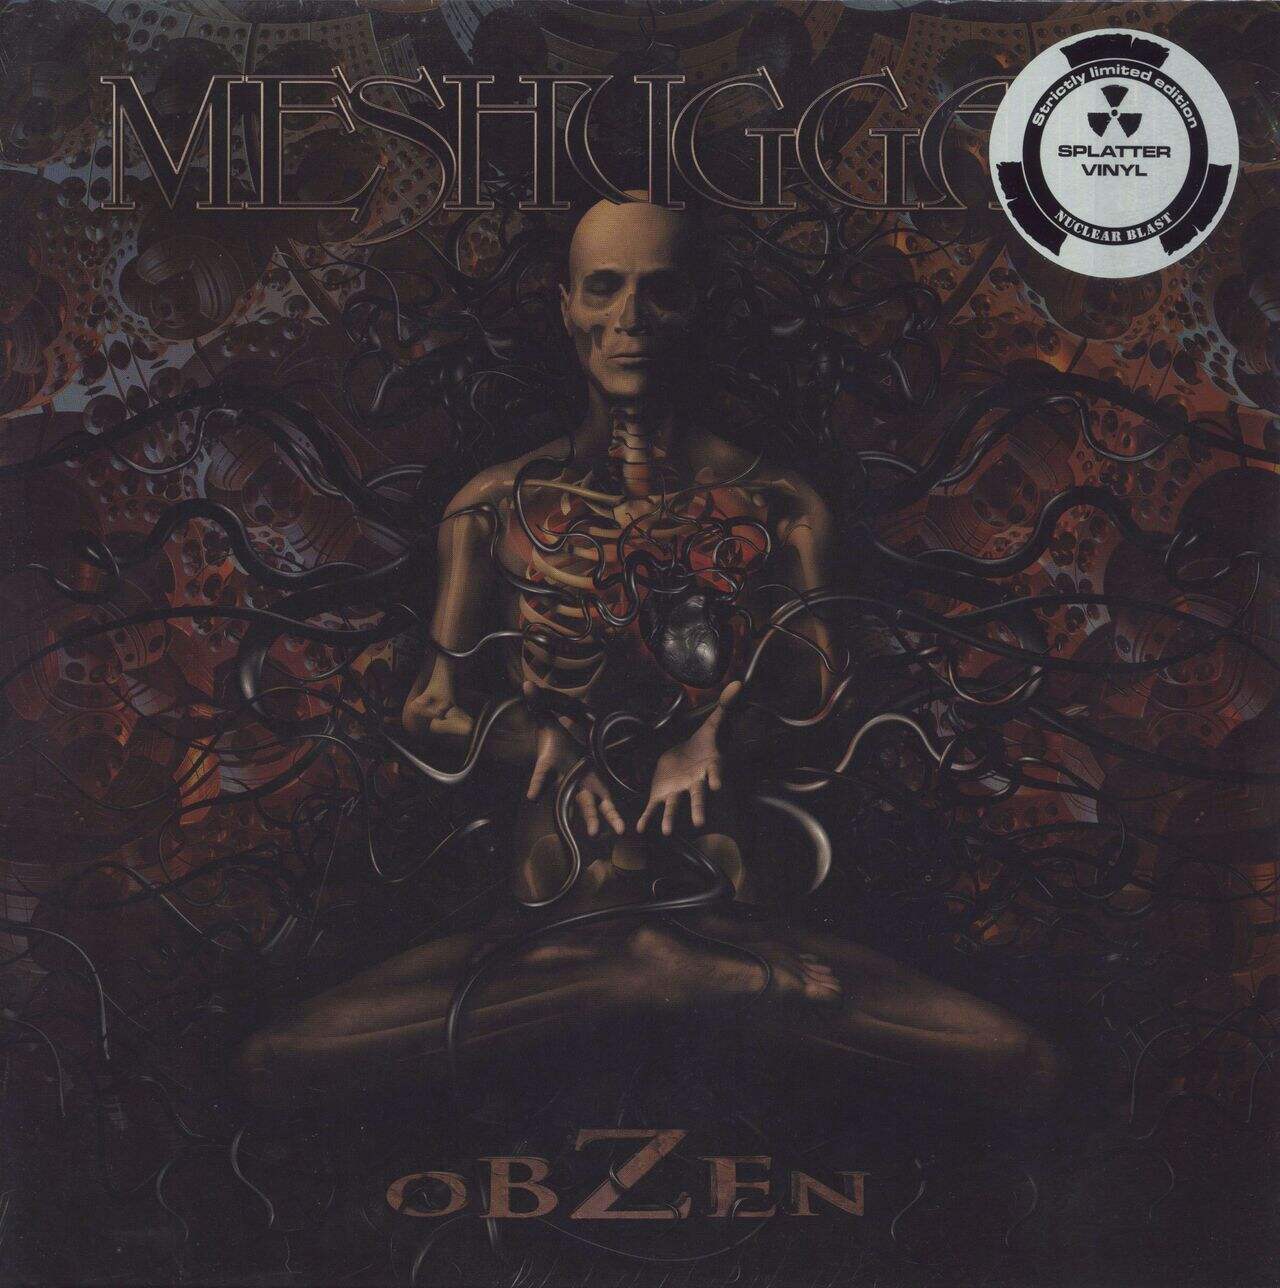 Meshuggah Obzen - Red w/ White Splatter - Reissue - Sealed UK Vinyl LP